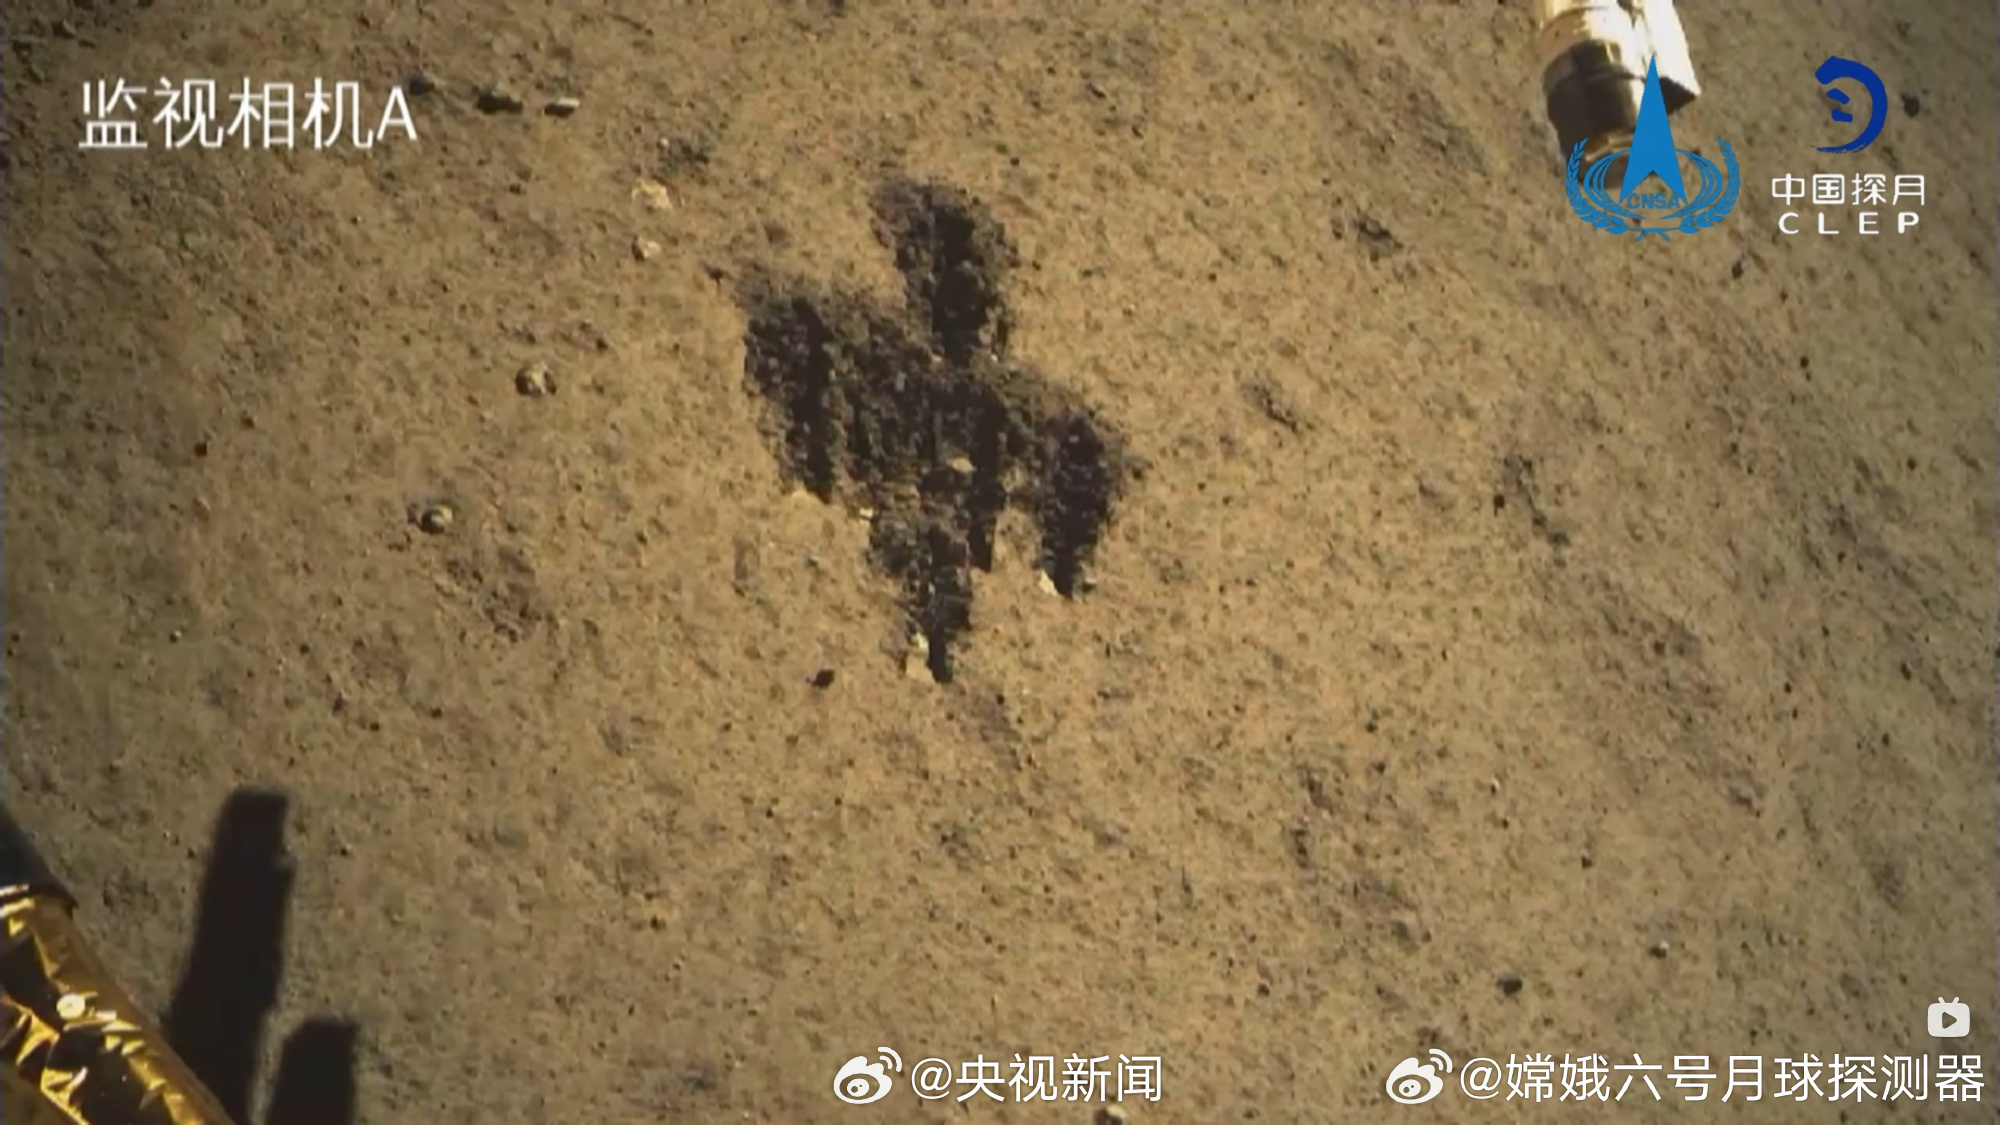 月球背面有了一个中国字 嫦娥在月球挖了一个“中”字